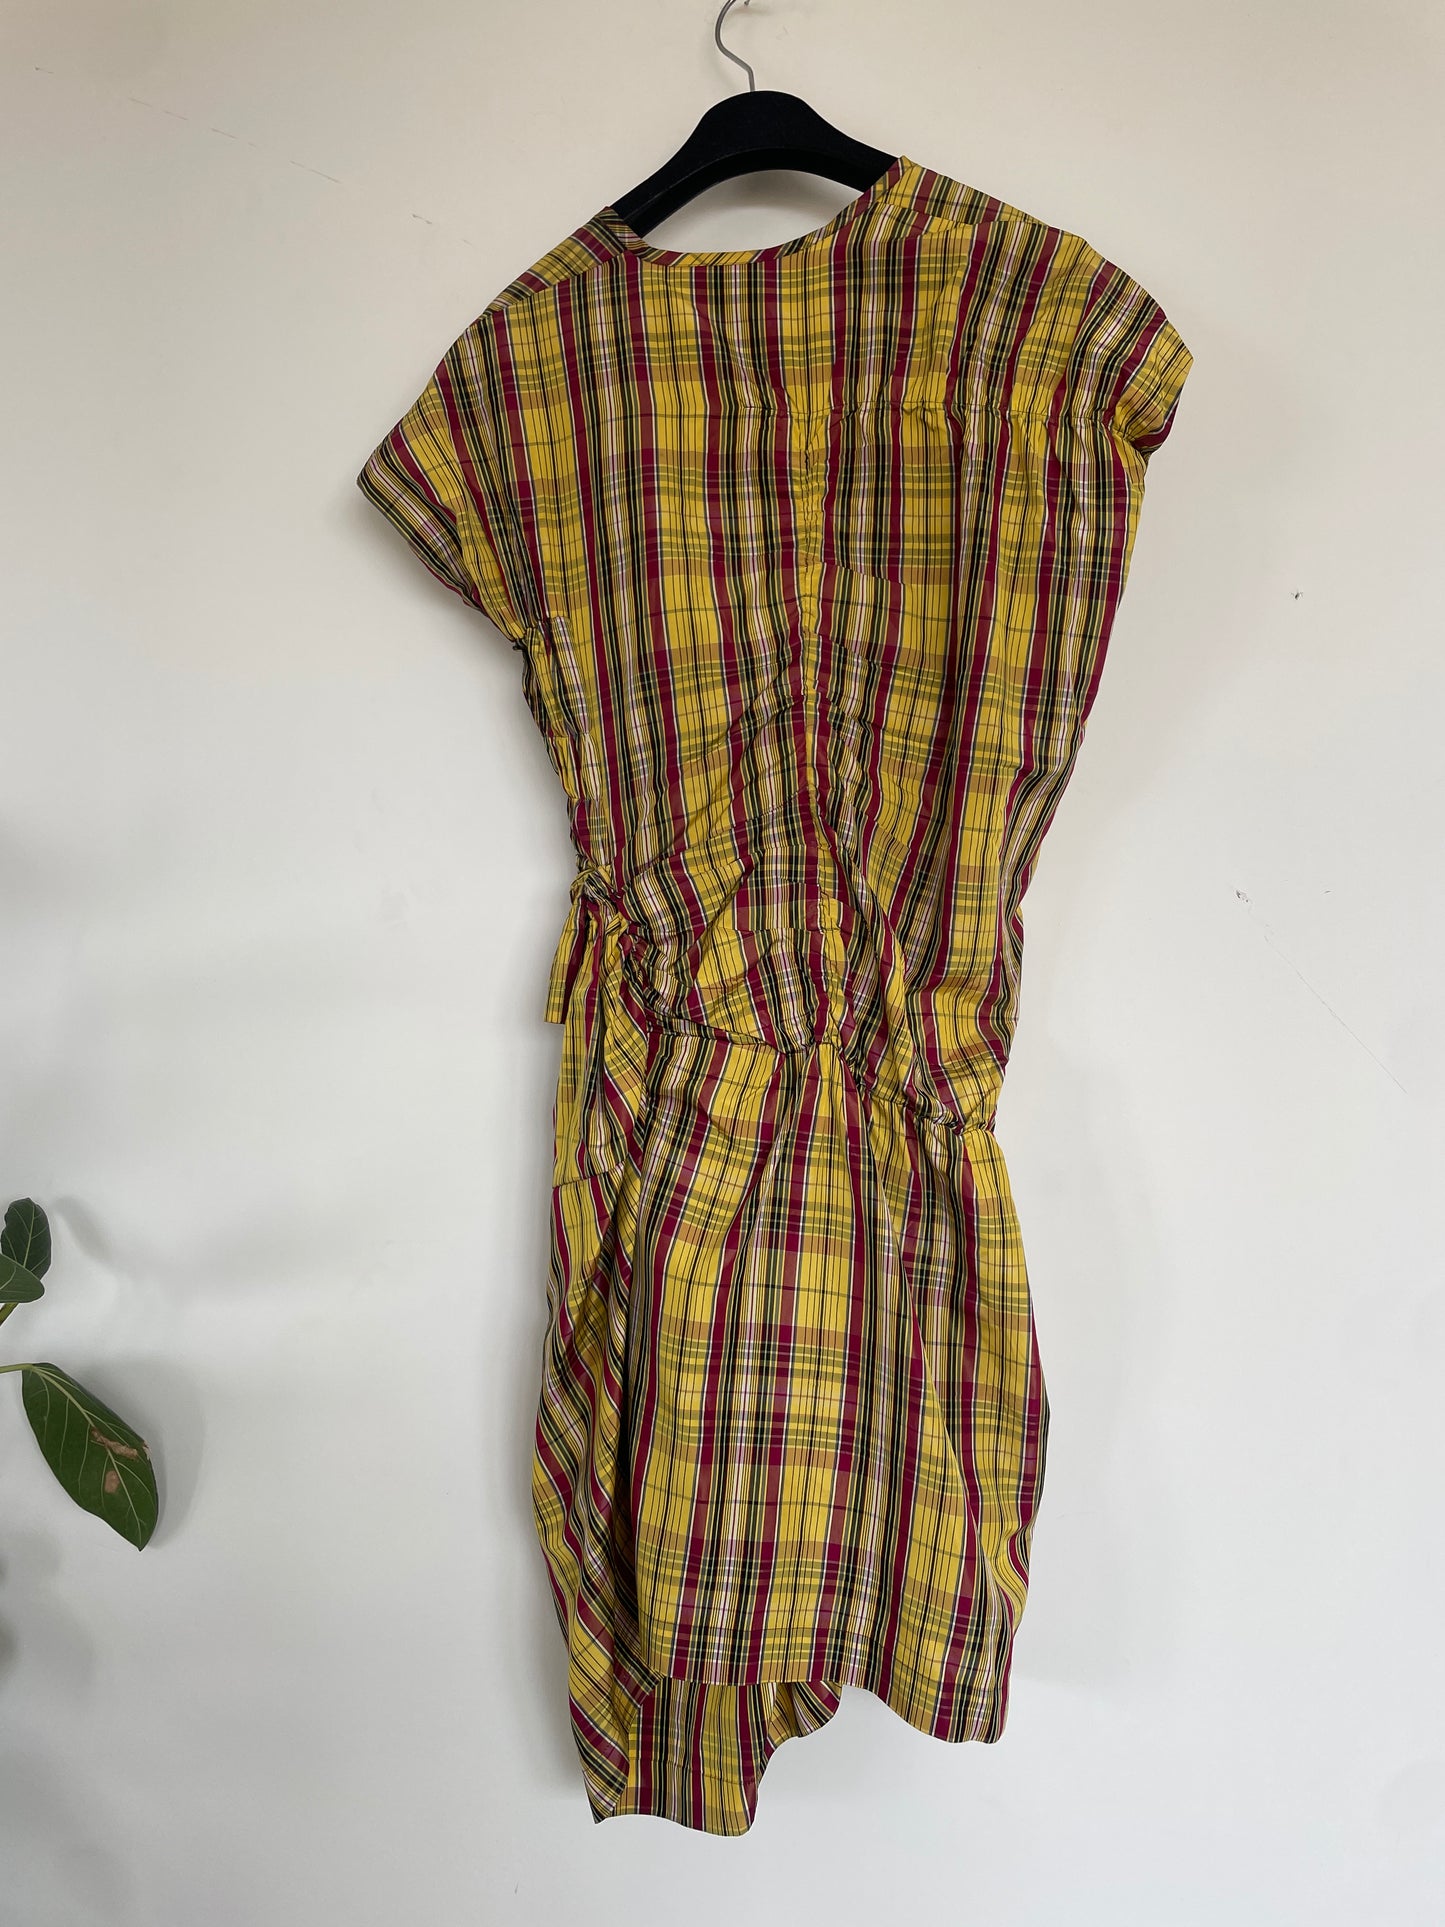 Comme des Garçons AD 1989 tartan ruffled asymmetric cut dress